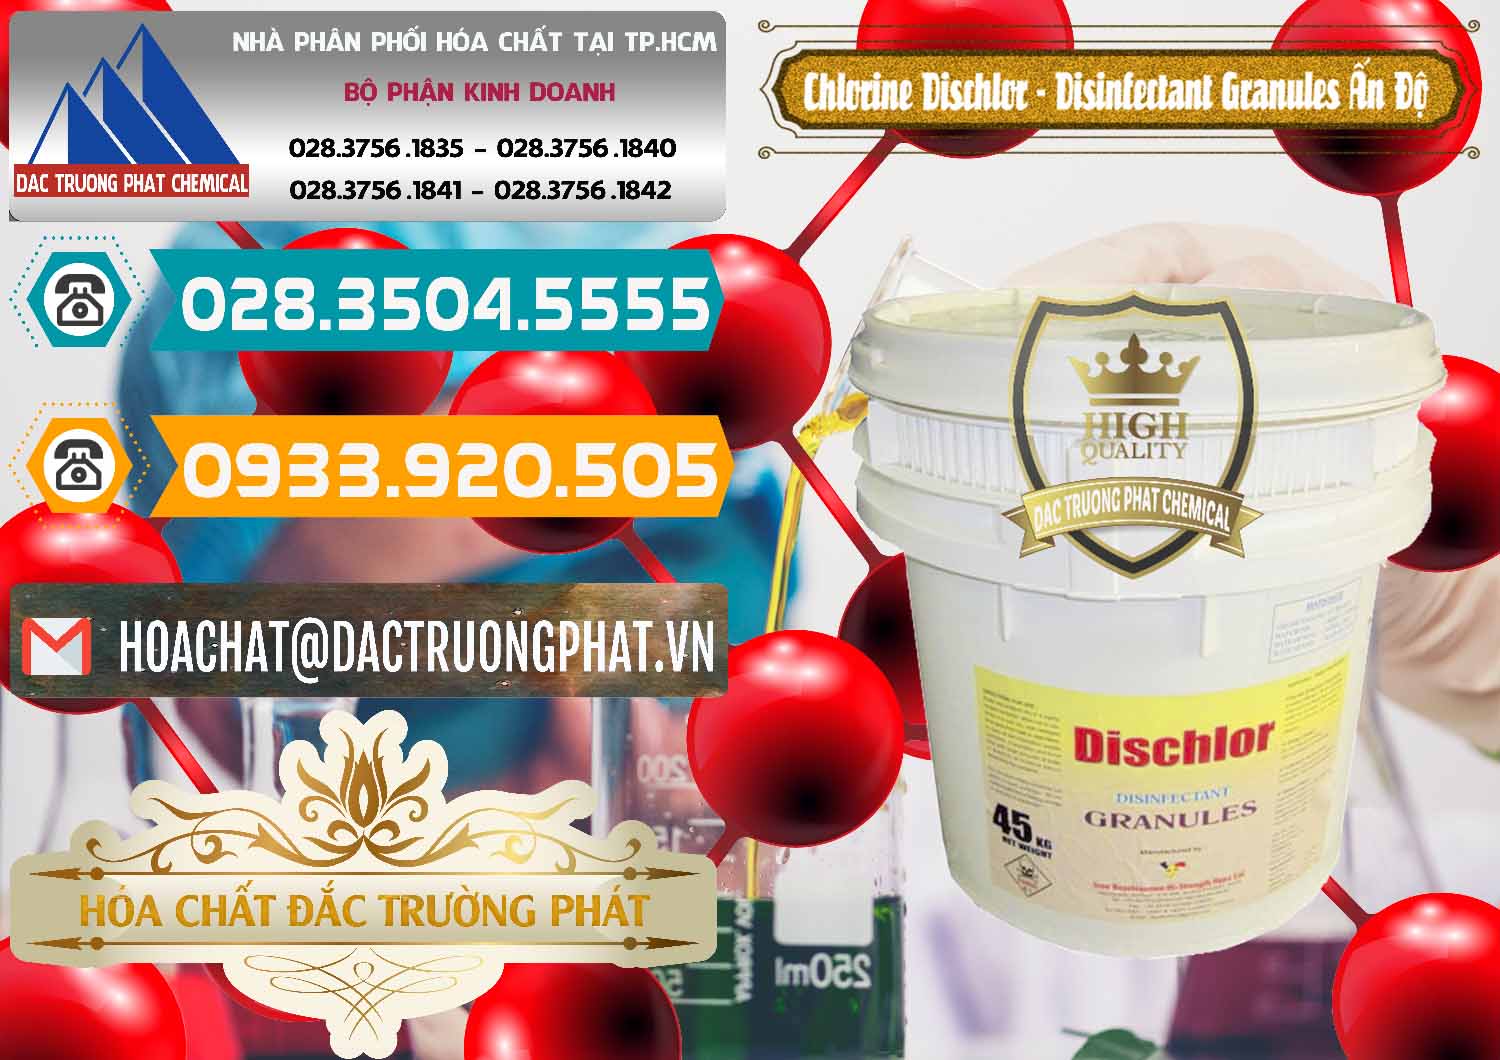 Chuyên bán và cung cấp Chlorine – Clorin 70% Dischlor - Disinfectant Granules Ấn Độ India - 0248 - Nơi phân phối - nhập khẩu hóa chất tại TP.HCM - congtyhoachat.vn